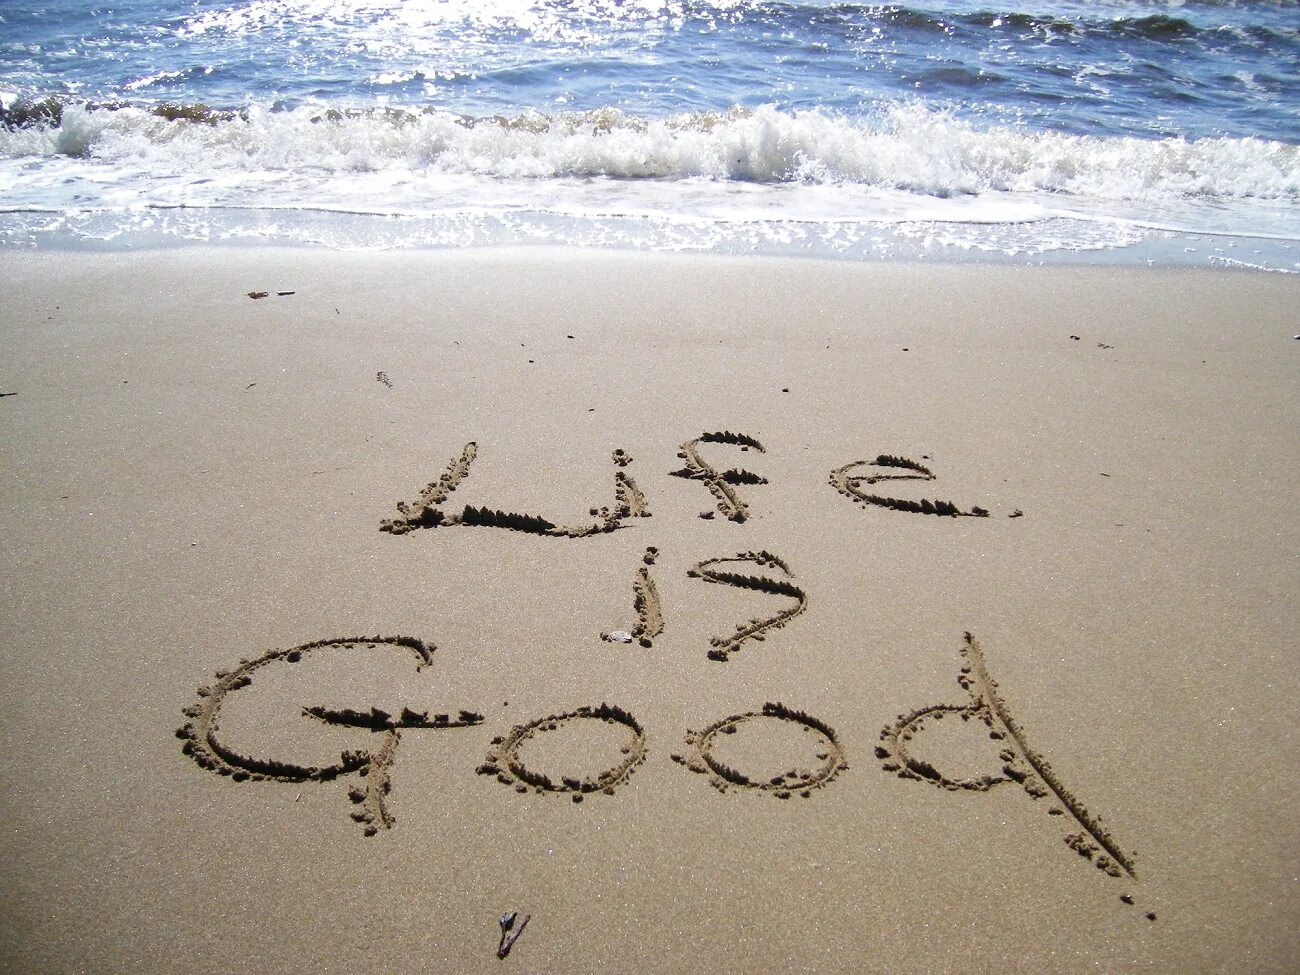 I am living the good life. Жизнь прекрасна на песке. Жизнь хороша. Яркой жизни надпись. Жизнь прекрасна море песок надпись.